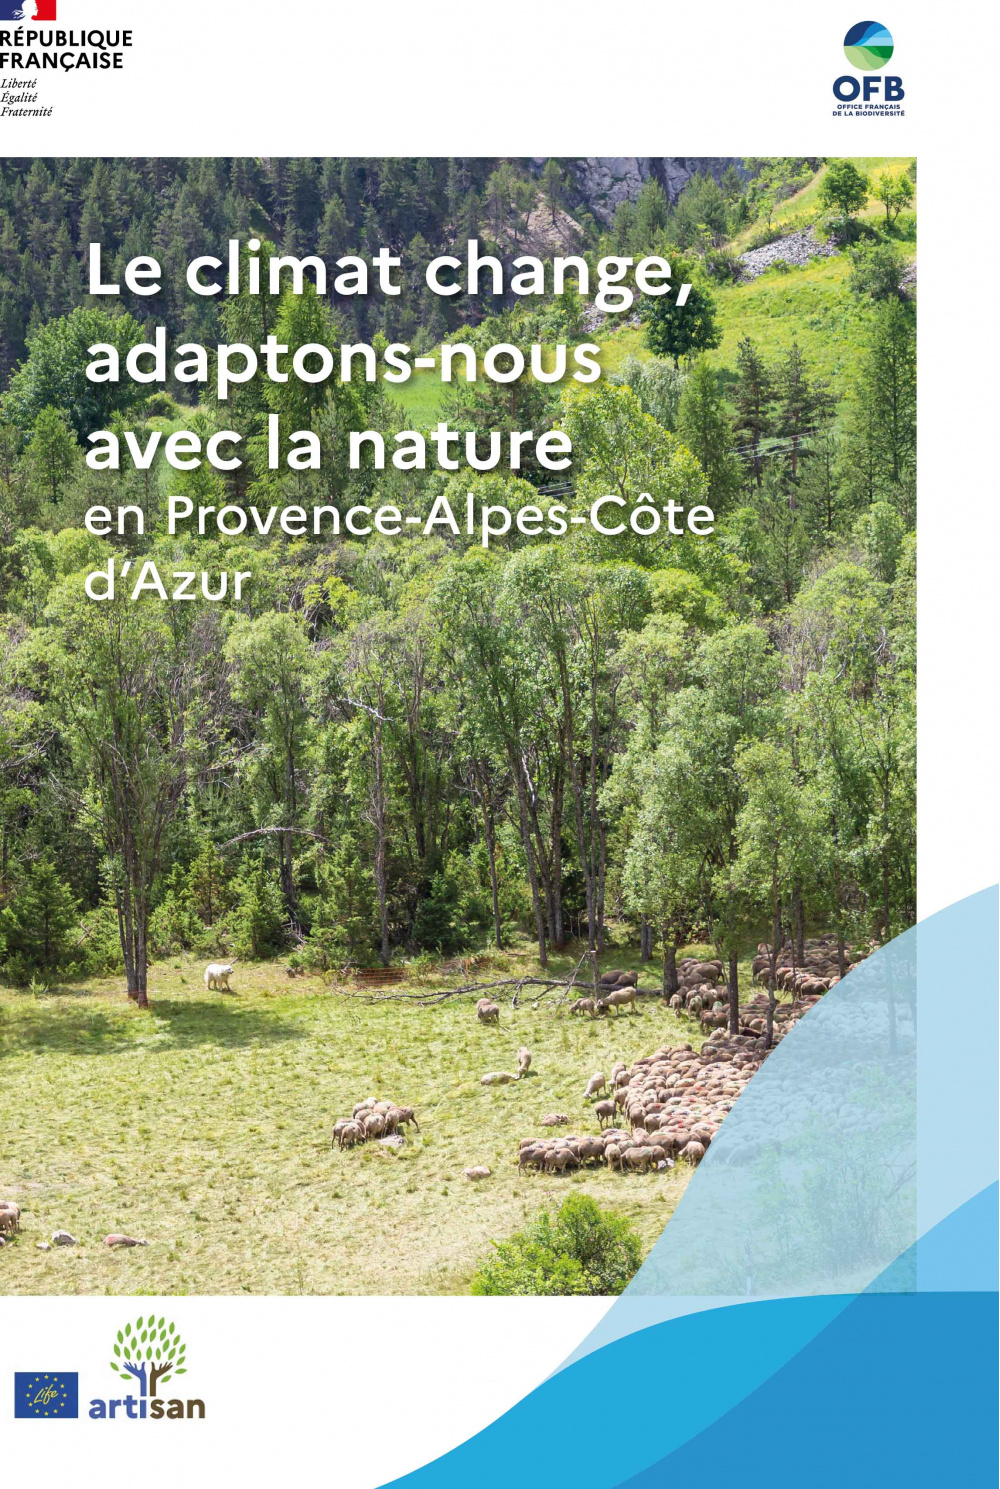 Le climat change, adaptons-nous avec la nature en Provence-Alpes-Côte d’Azur